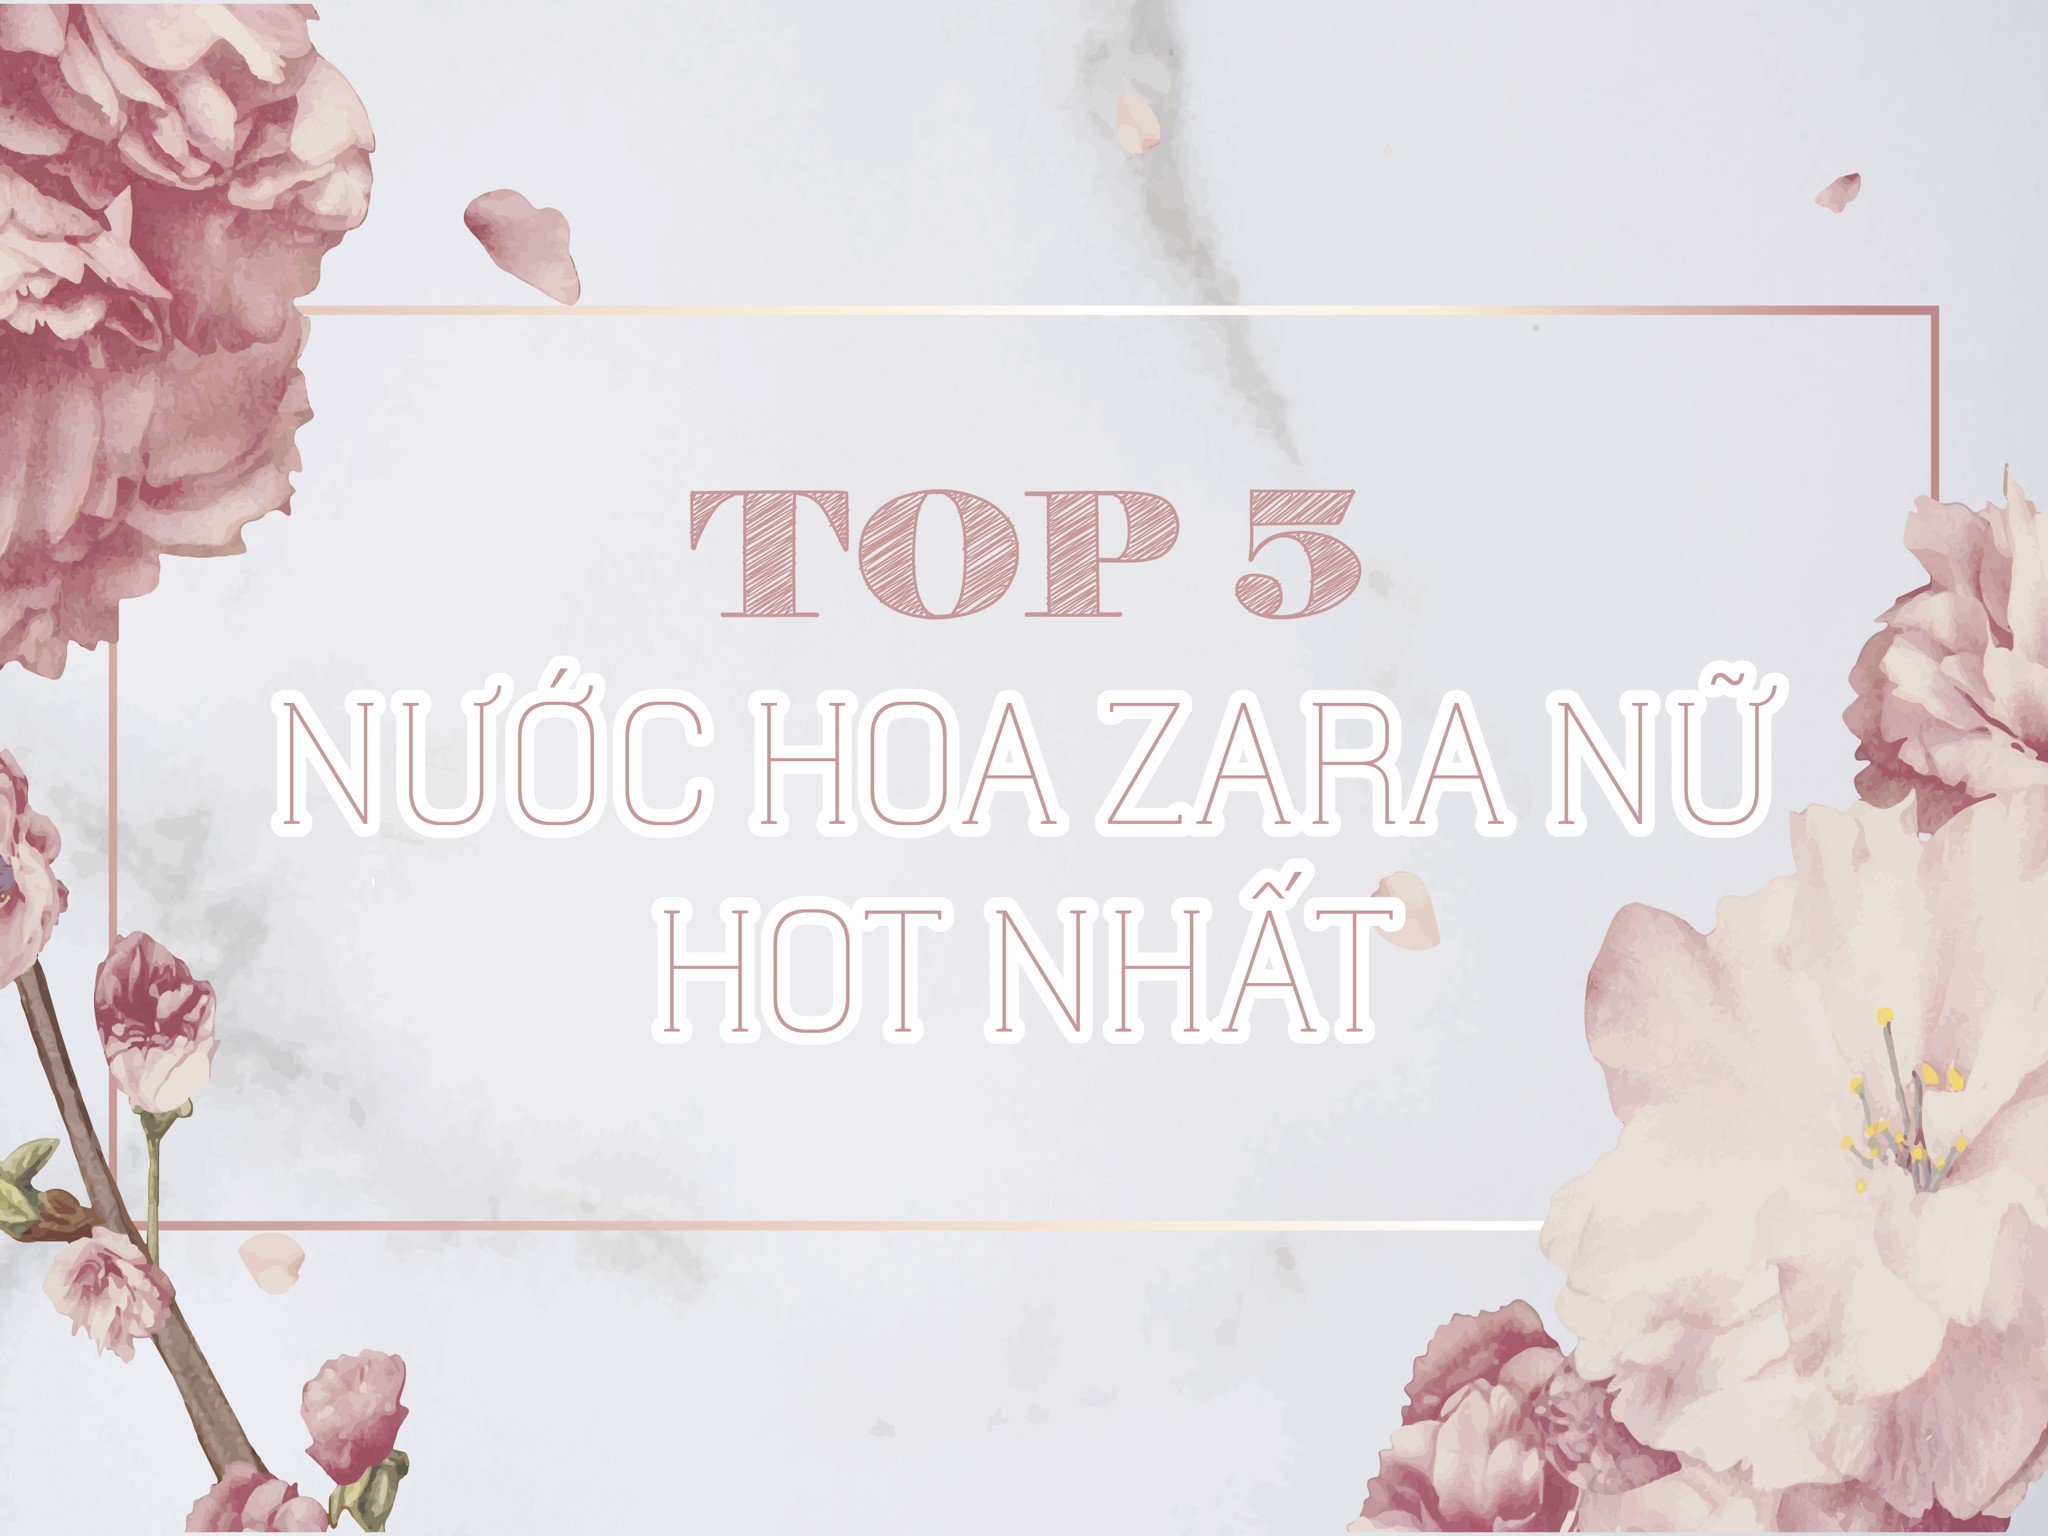 Top nước hoa Zara nữ chính hãng hot nhất hiện nay